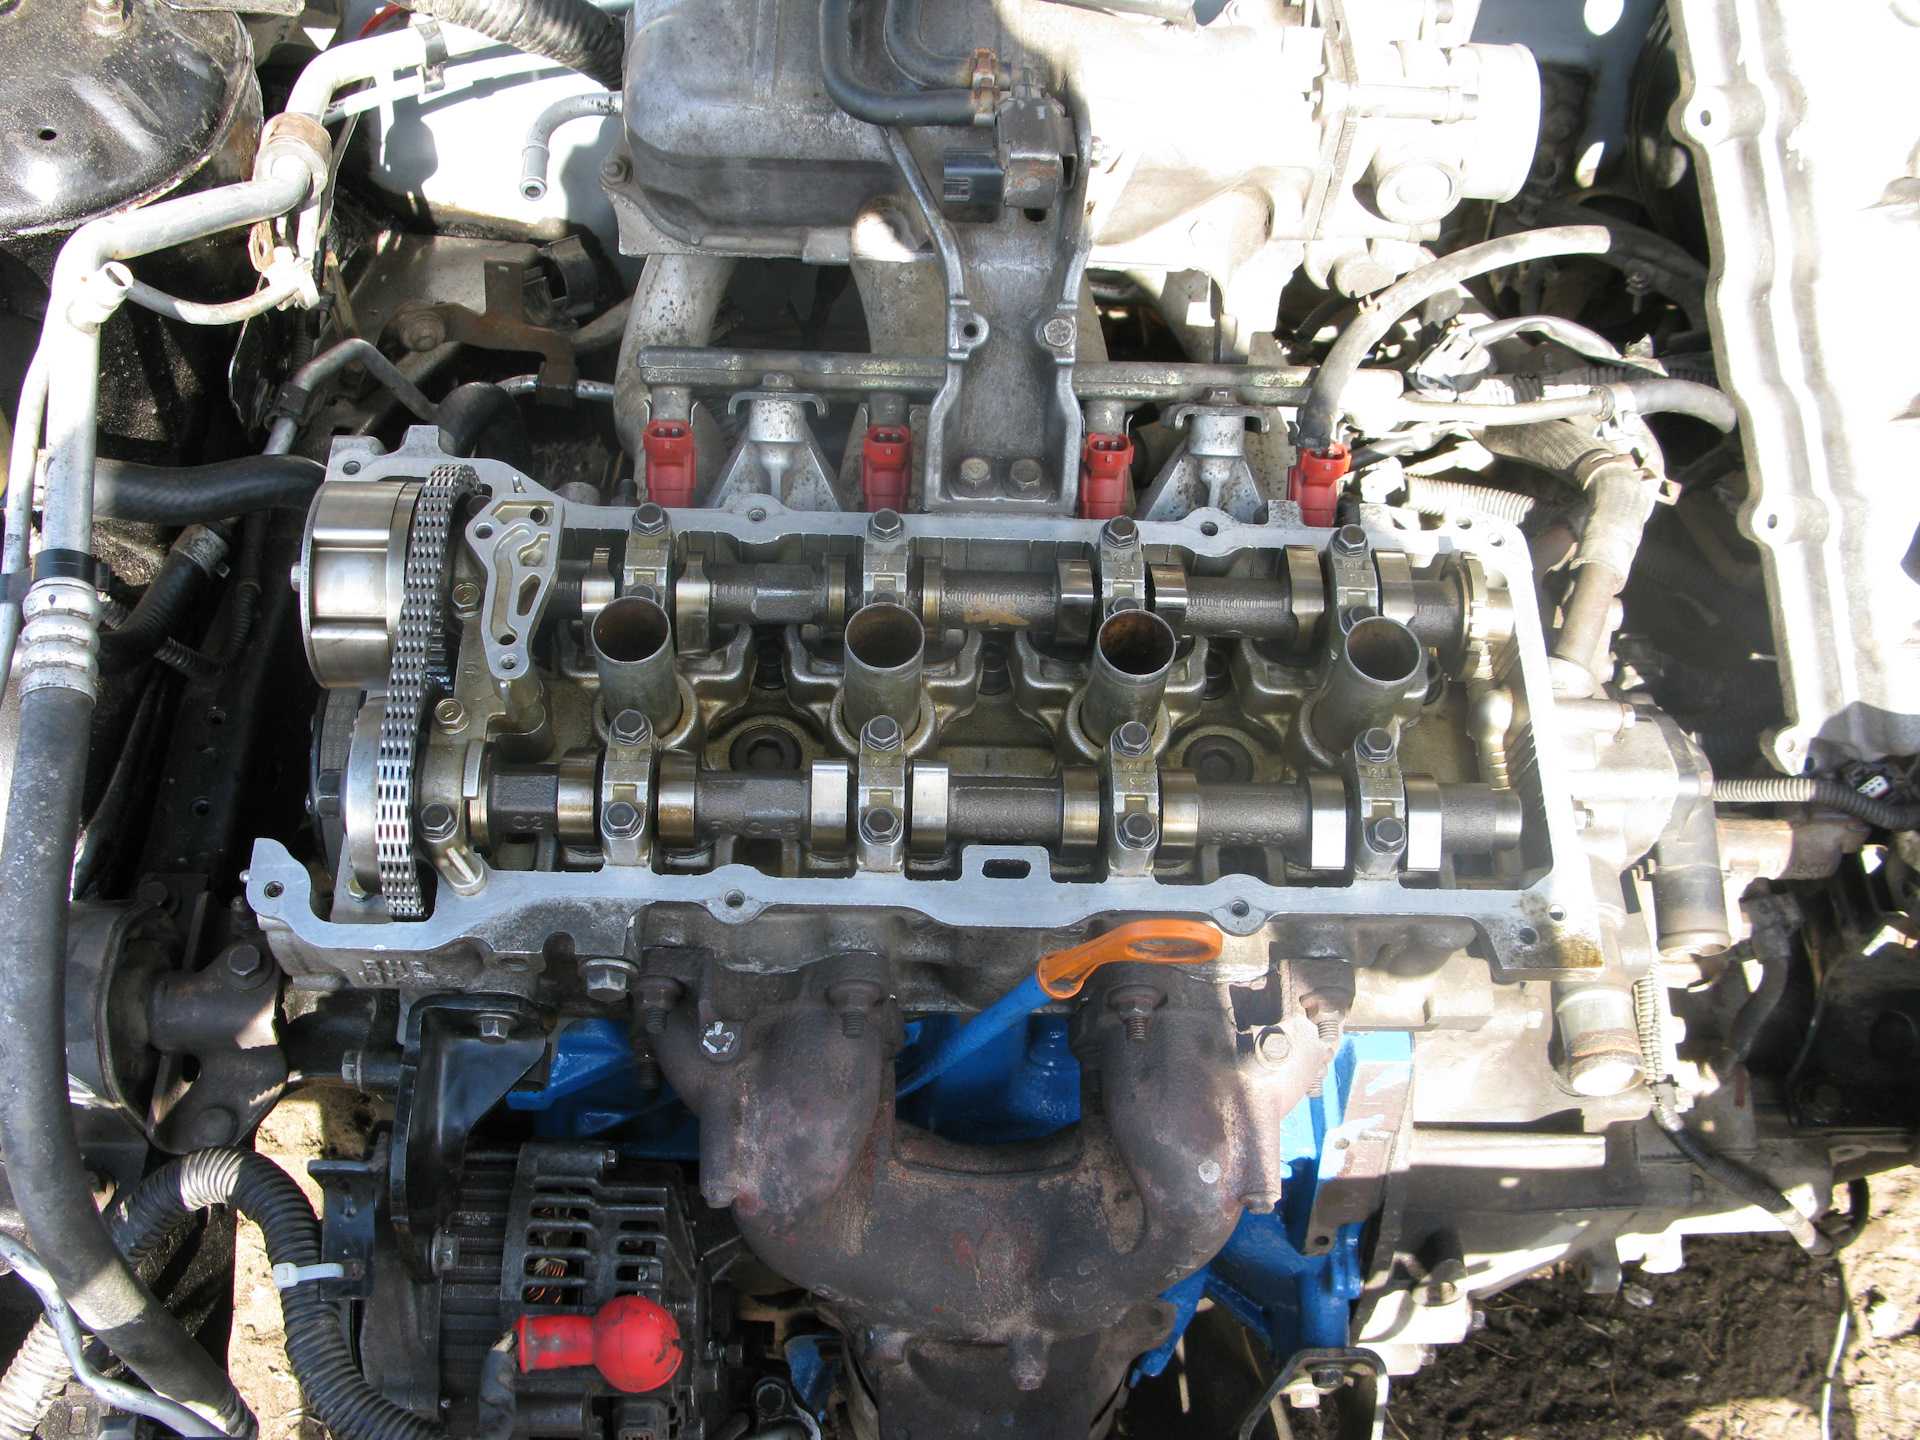 Nissan qg15de (1.5 l) engine: specs and review, service data